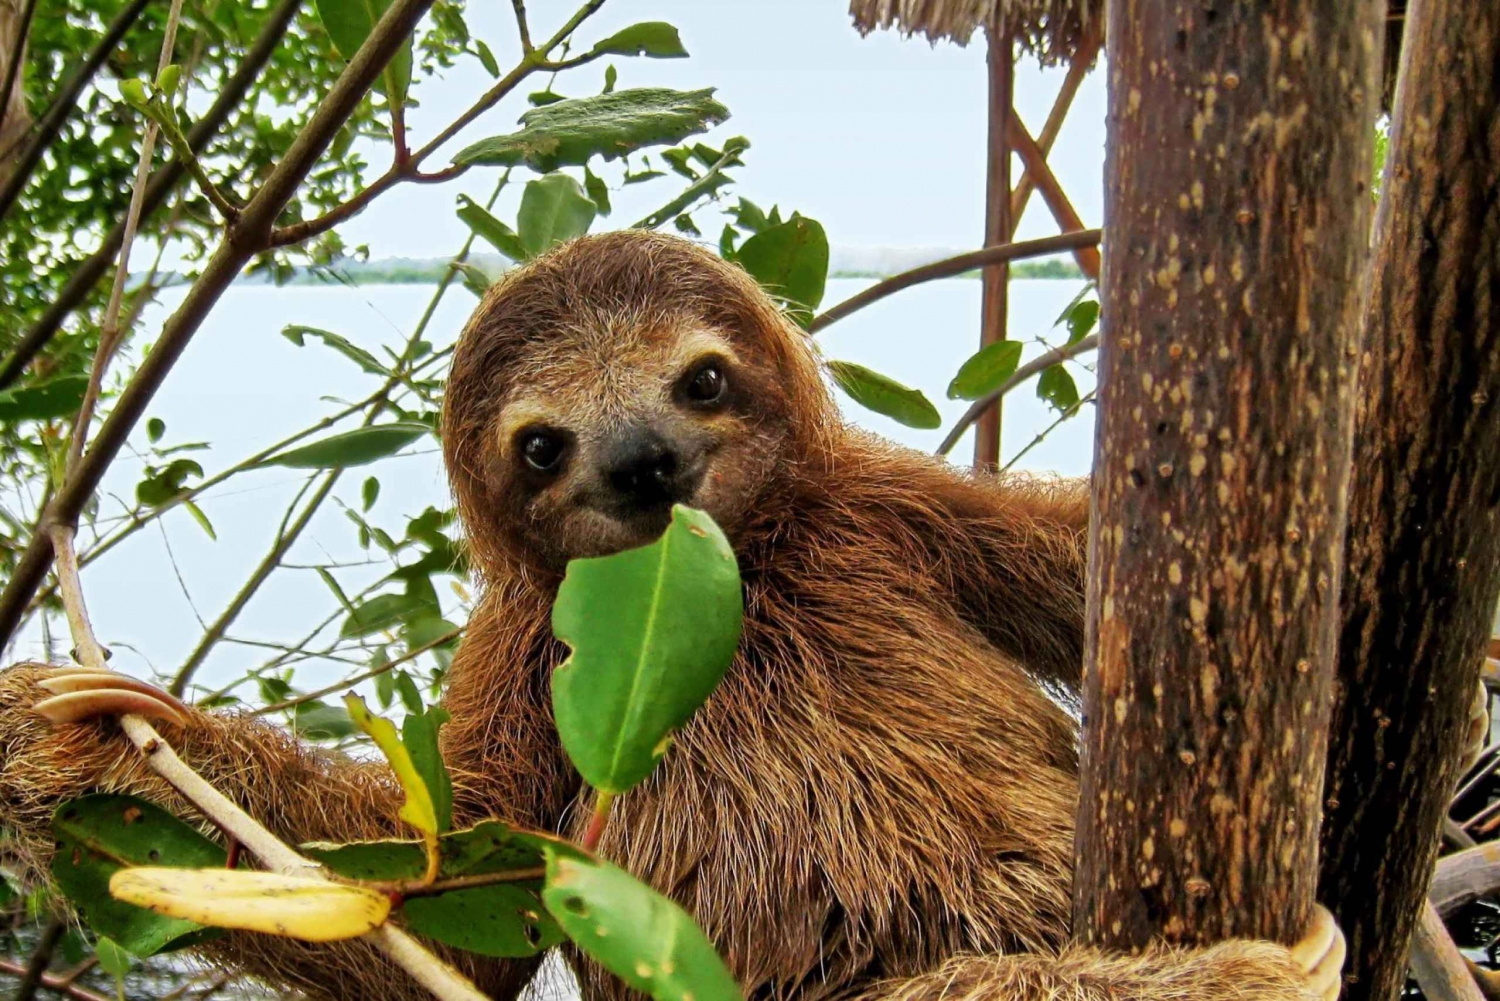 Uvita: Trilha de observação de preguiças - O melhor passeio de preguiças na Costa Rica